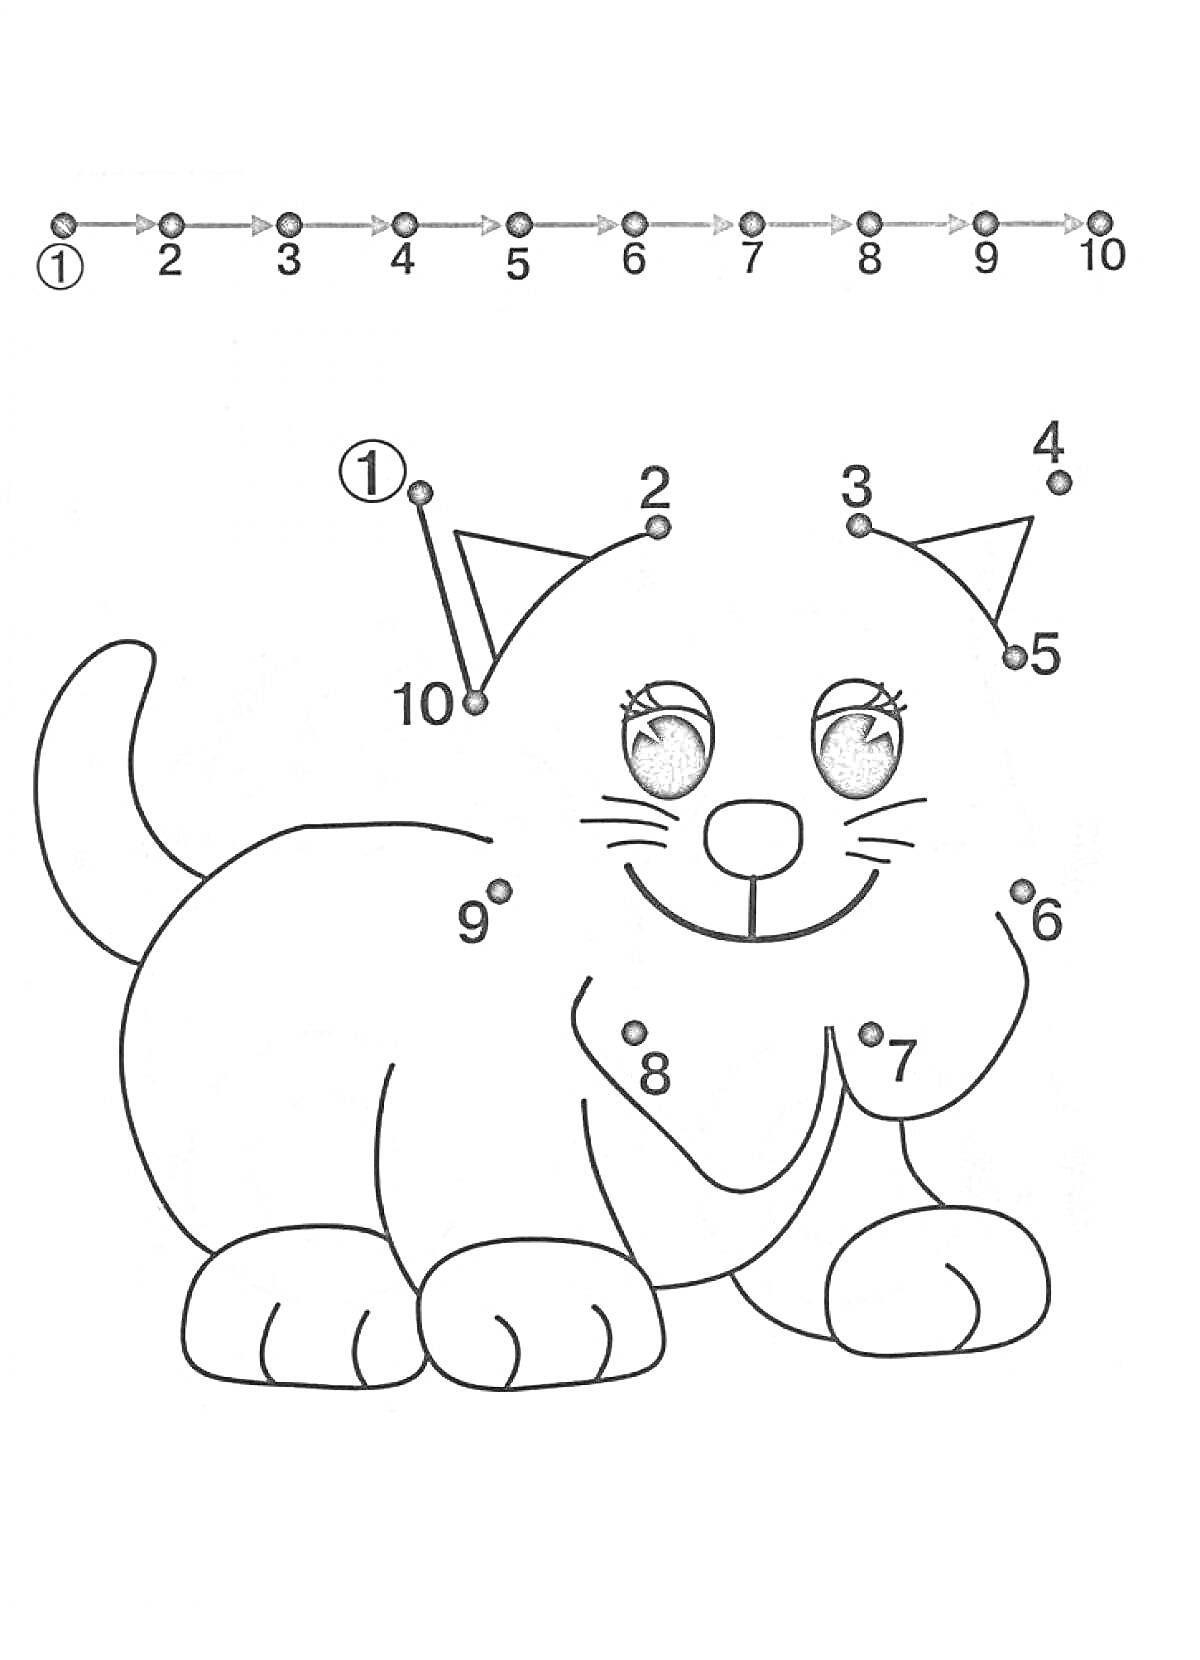 Раскраска Соедини точки по цифрам - Кошка с большими глазами